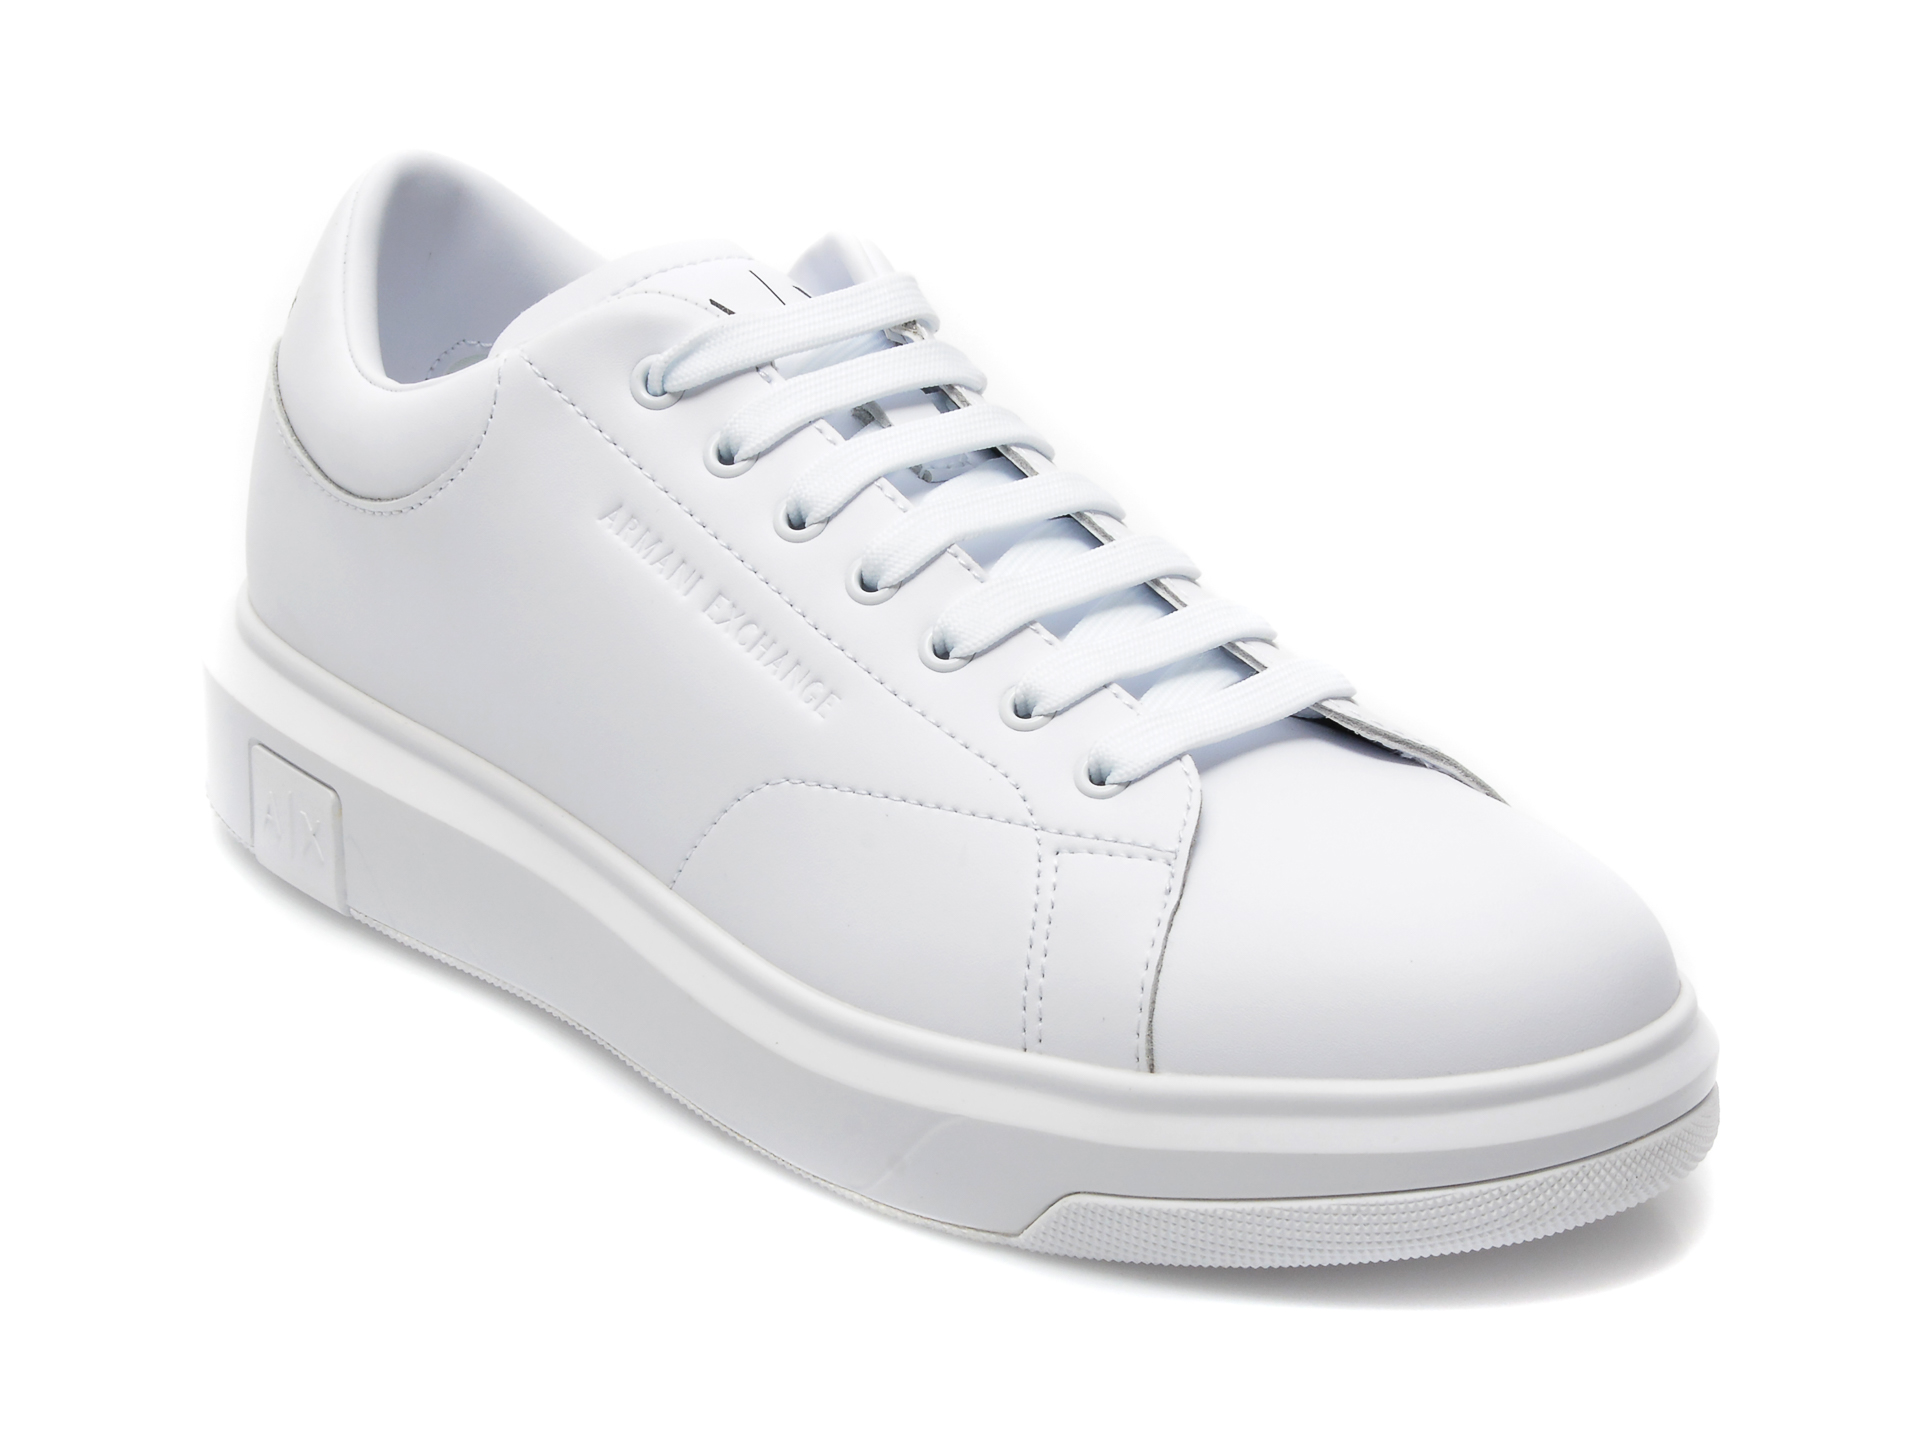 Pantofi sport ARMANI EXCHANGE albi, XUX123, din piele naturala /barbati/pantofi